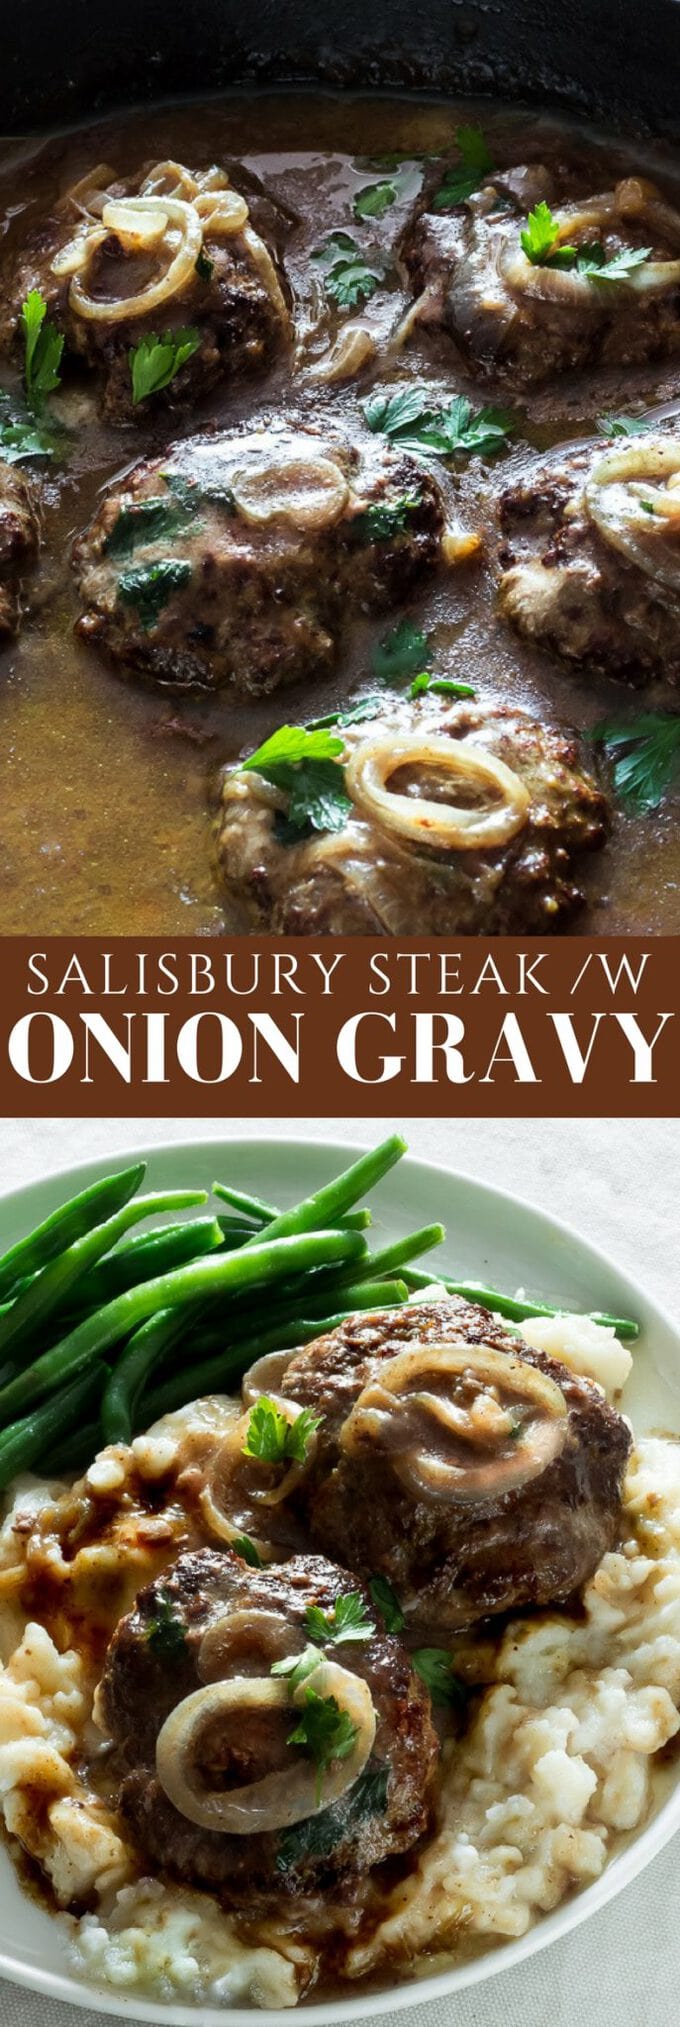 Salisbury steak